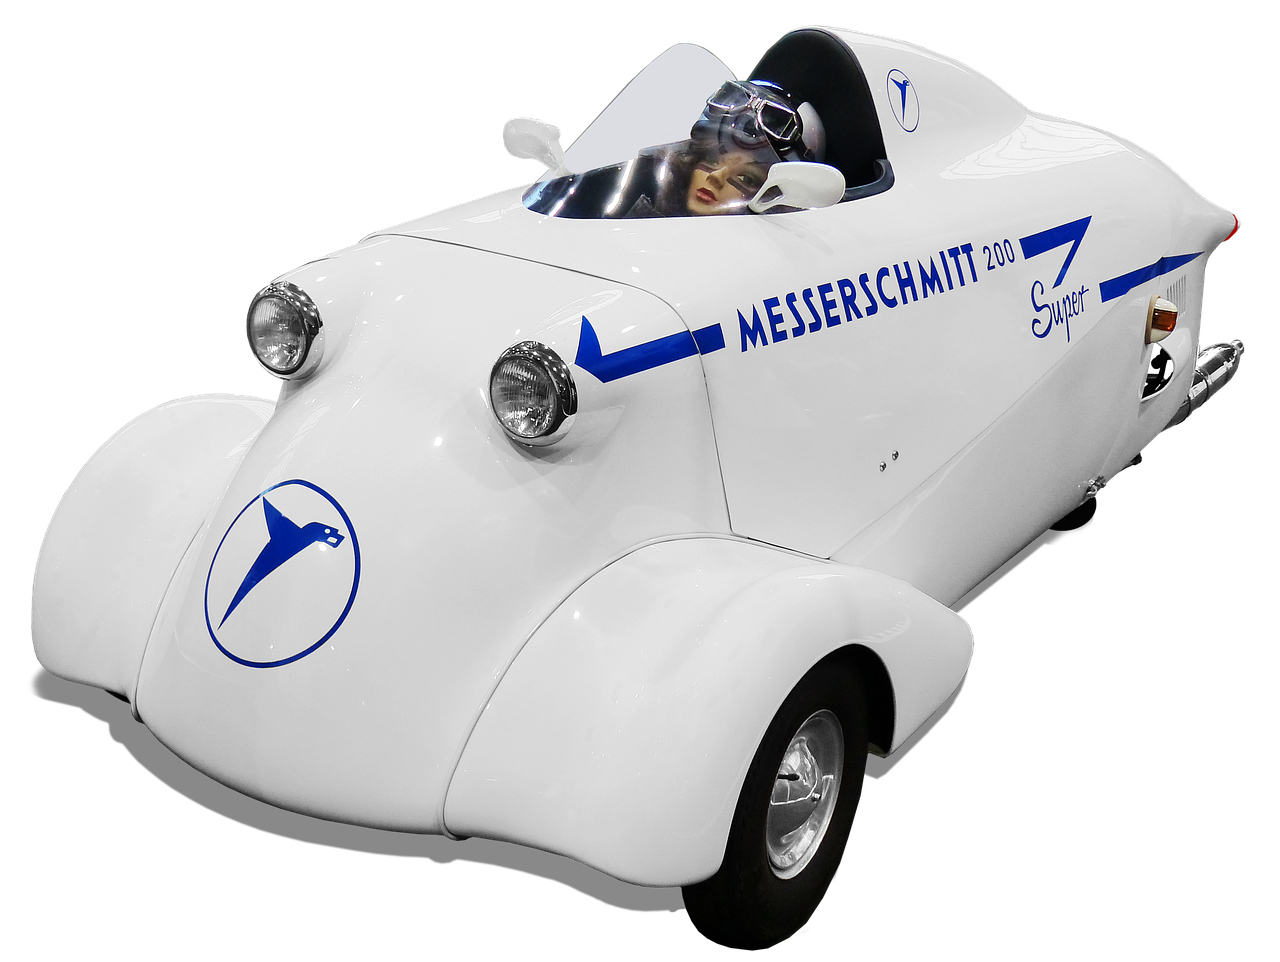 messerschmitt cabin scooter 200 super free photo